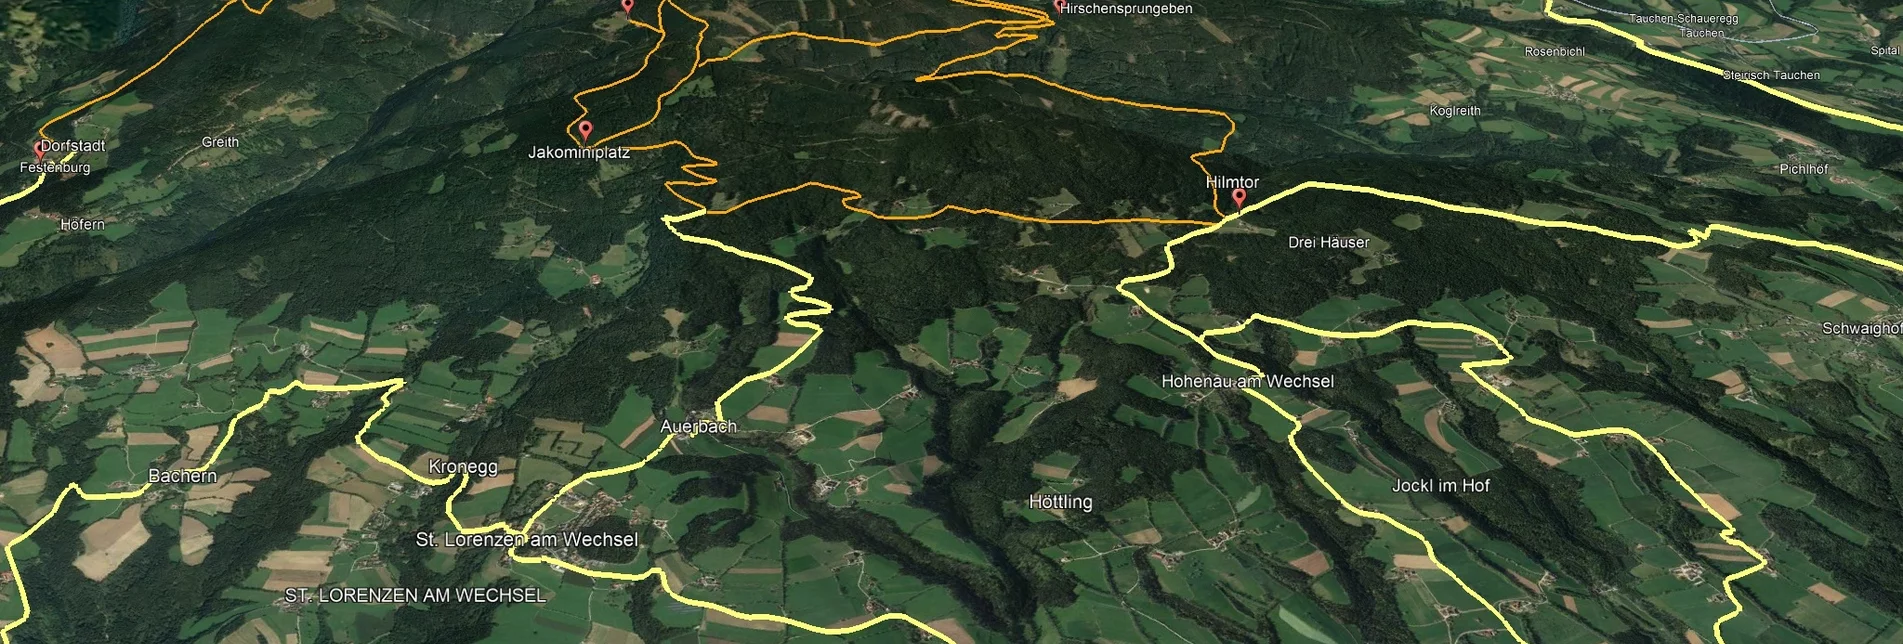 Mountainbike VORSCHAU Steirische Wexl Trails - Zubringer Festenburg nach Dorfstatt - Touren-Impression #1 | © Verein Tourismusentwicklung Steirischer Wechsel